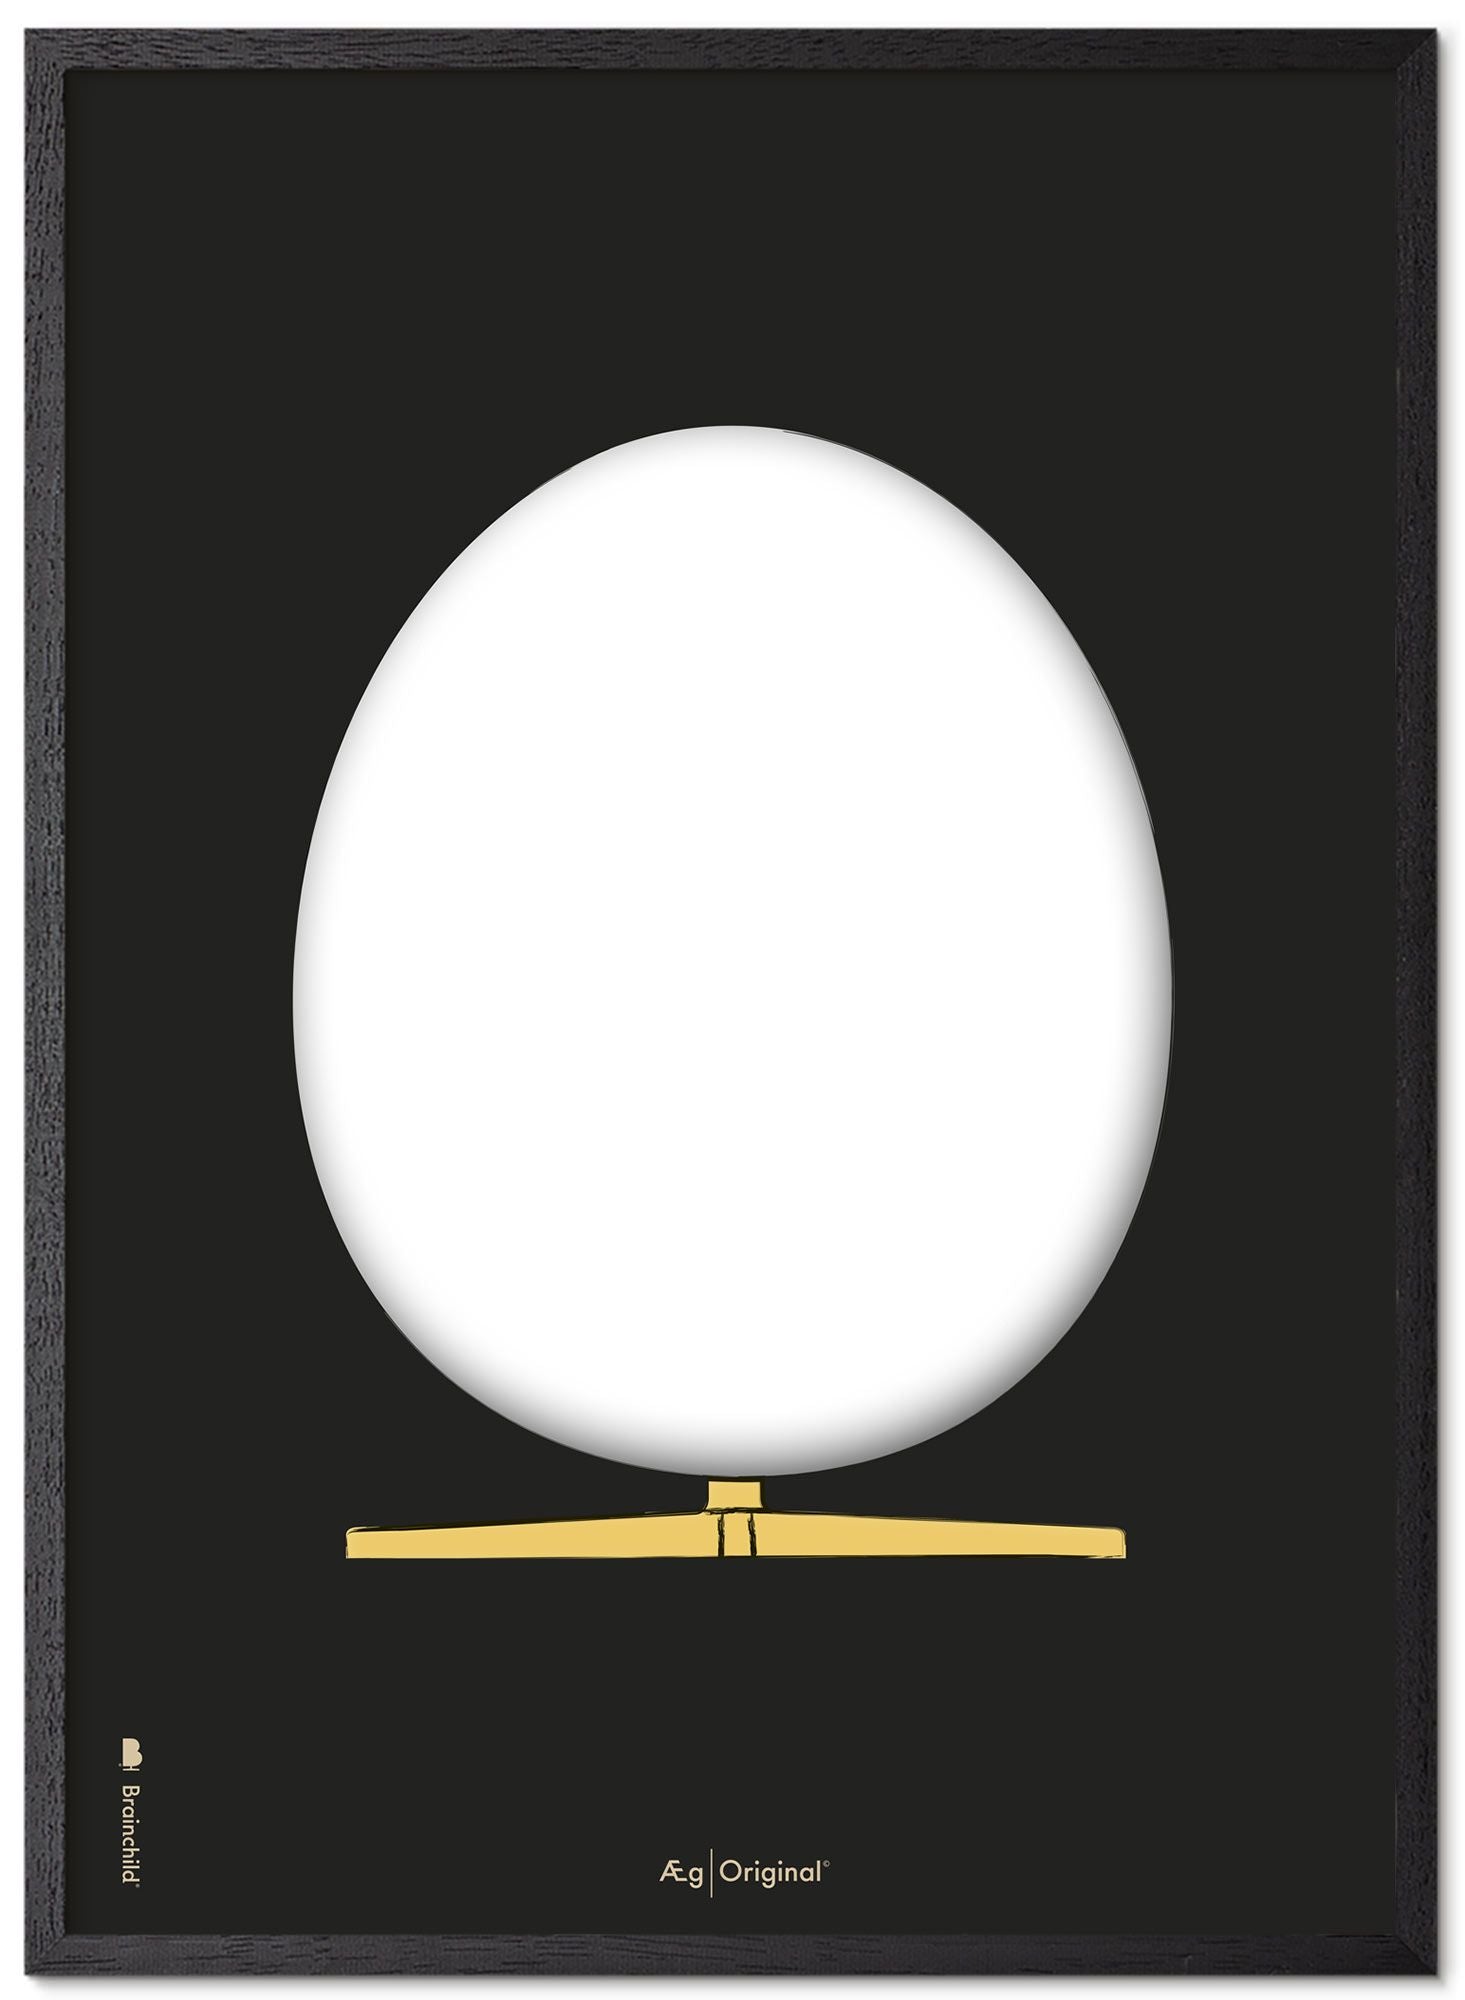 Brainchild Das Eierdesign -Skizze Posterrahmen aus schwarzer Lackholz A5, schwarzer Hintergrund